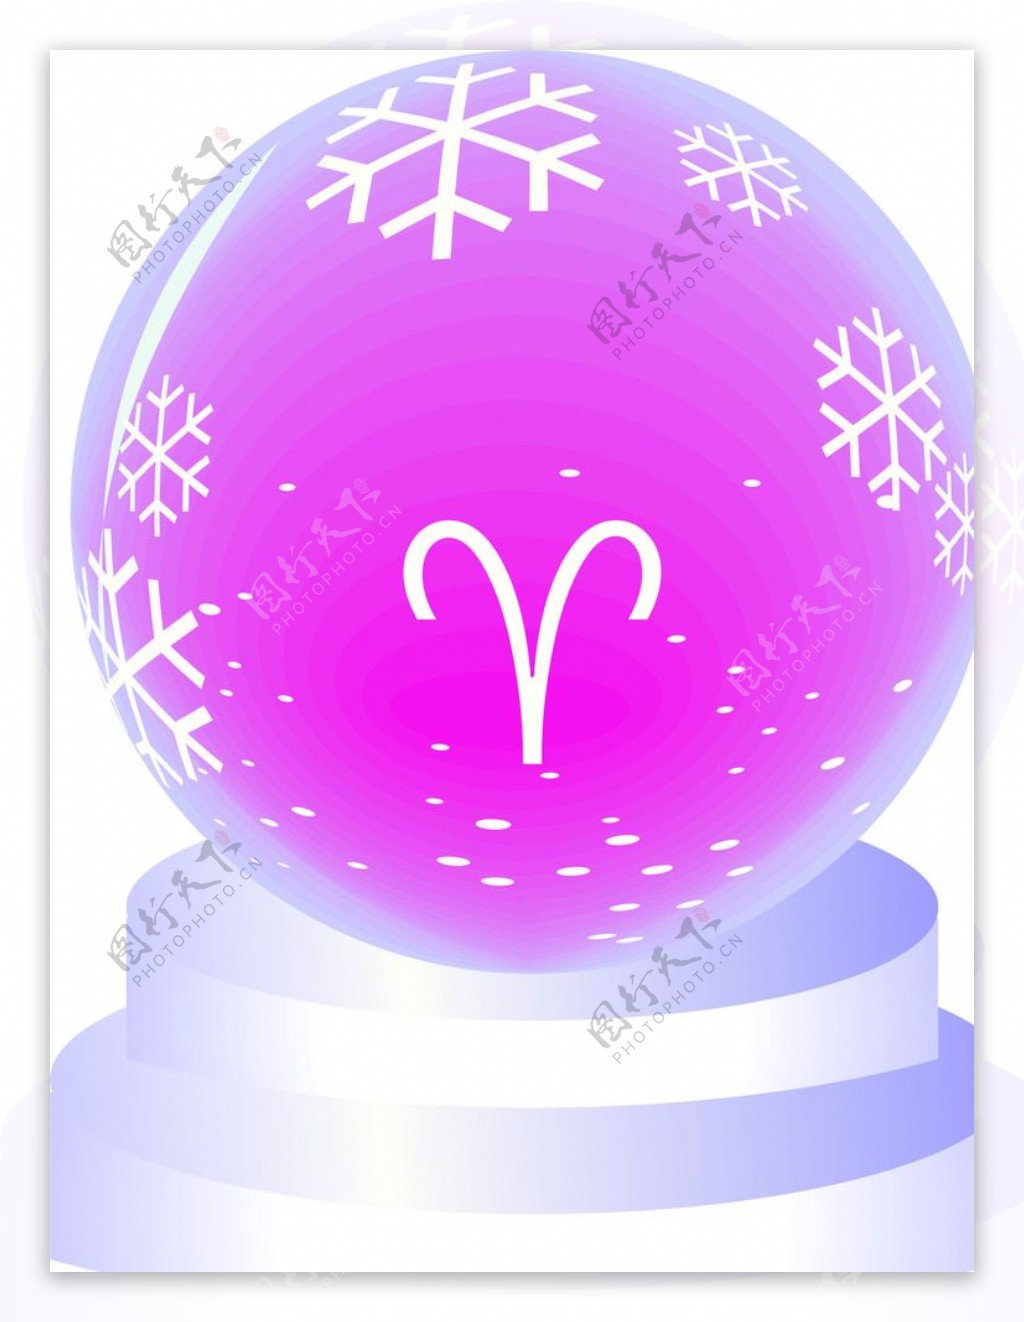 白羊座紫色水晶球